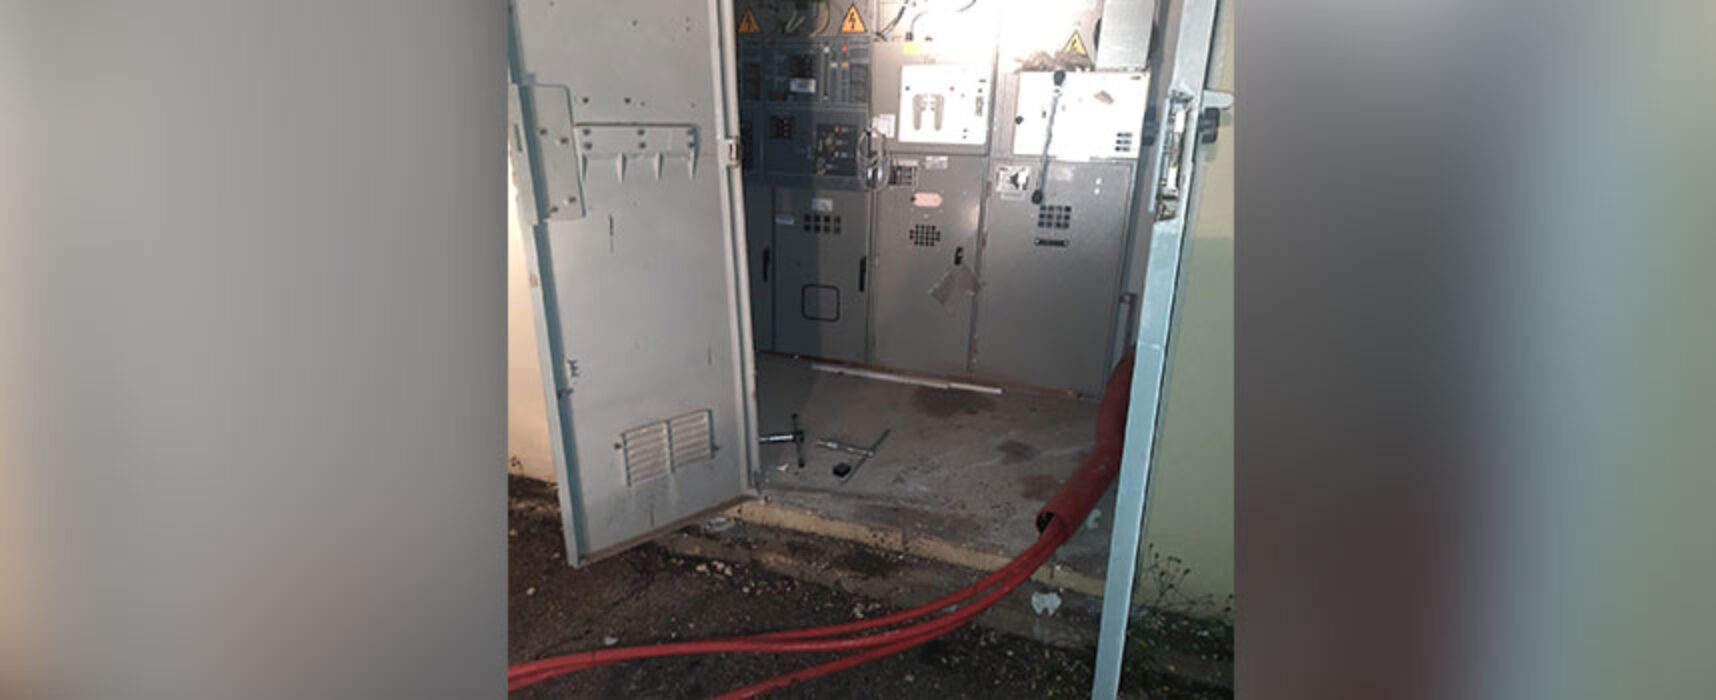 Manomissione e danni a cabina Enel in zona San Pietro, intervento dei Metronotte di Bisceglie